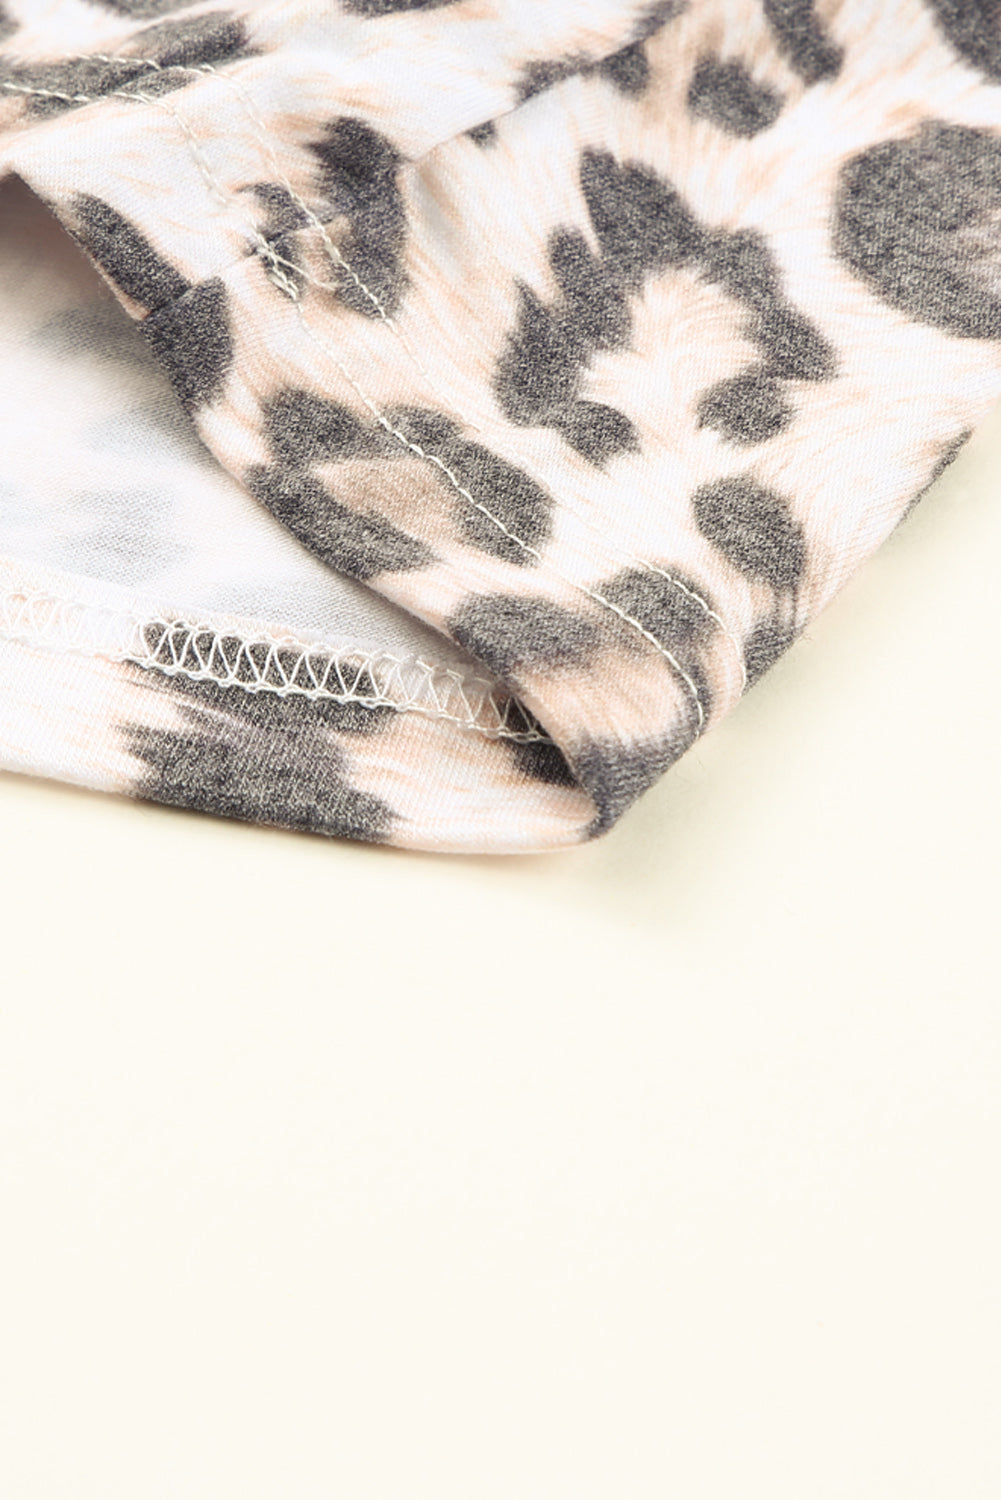 Večplastna in naborana mini obleka brez rokavov z leopardjim vzorcem